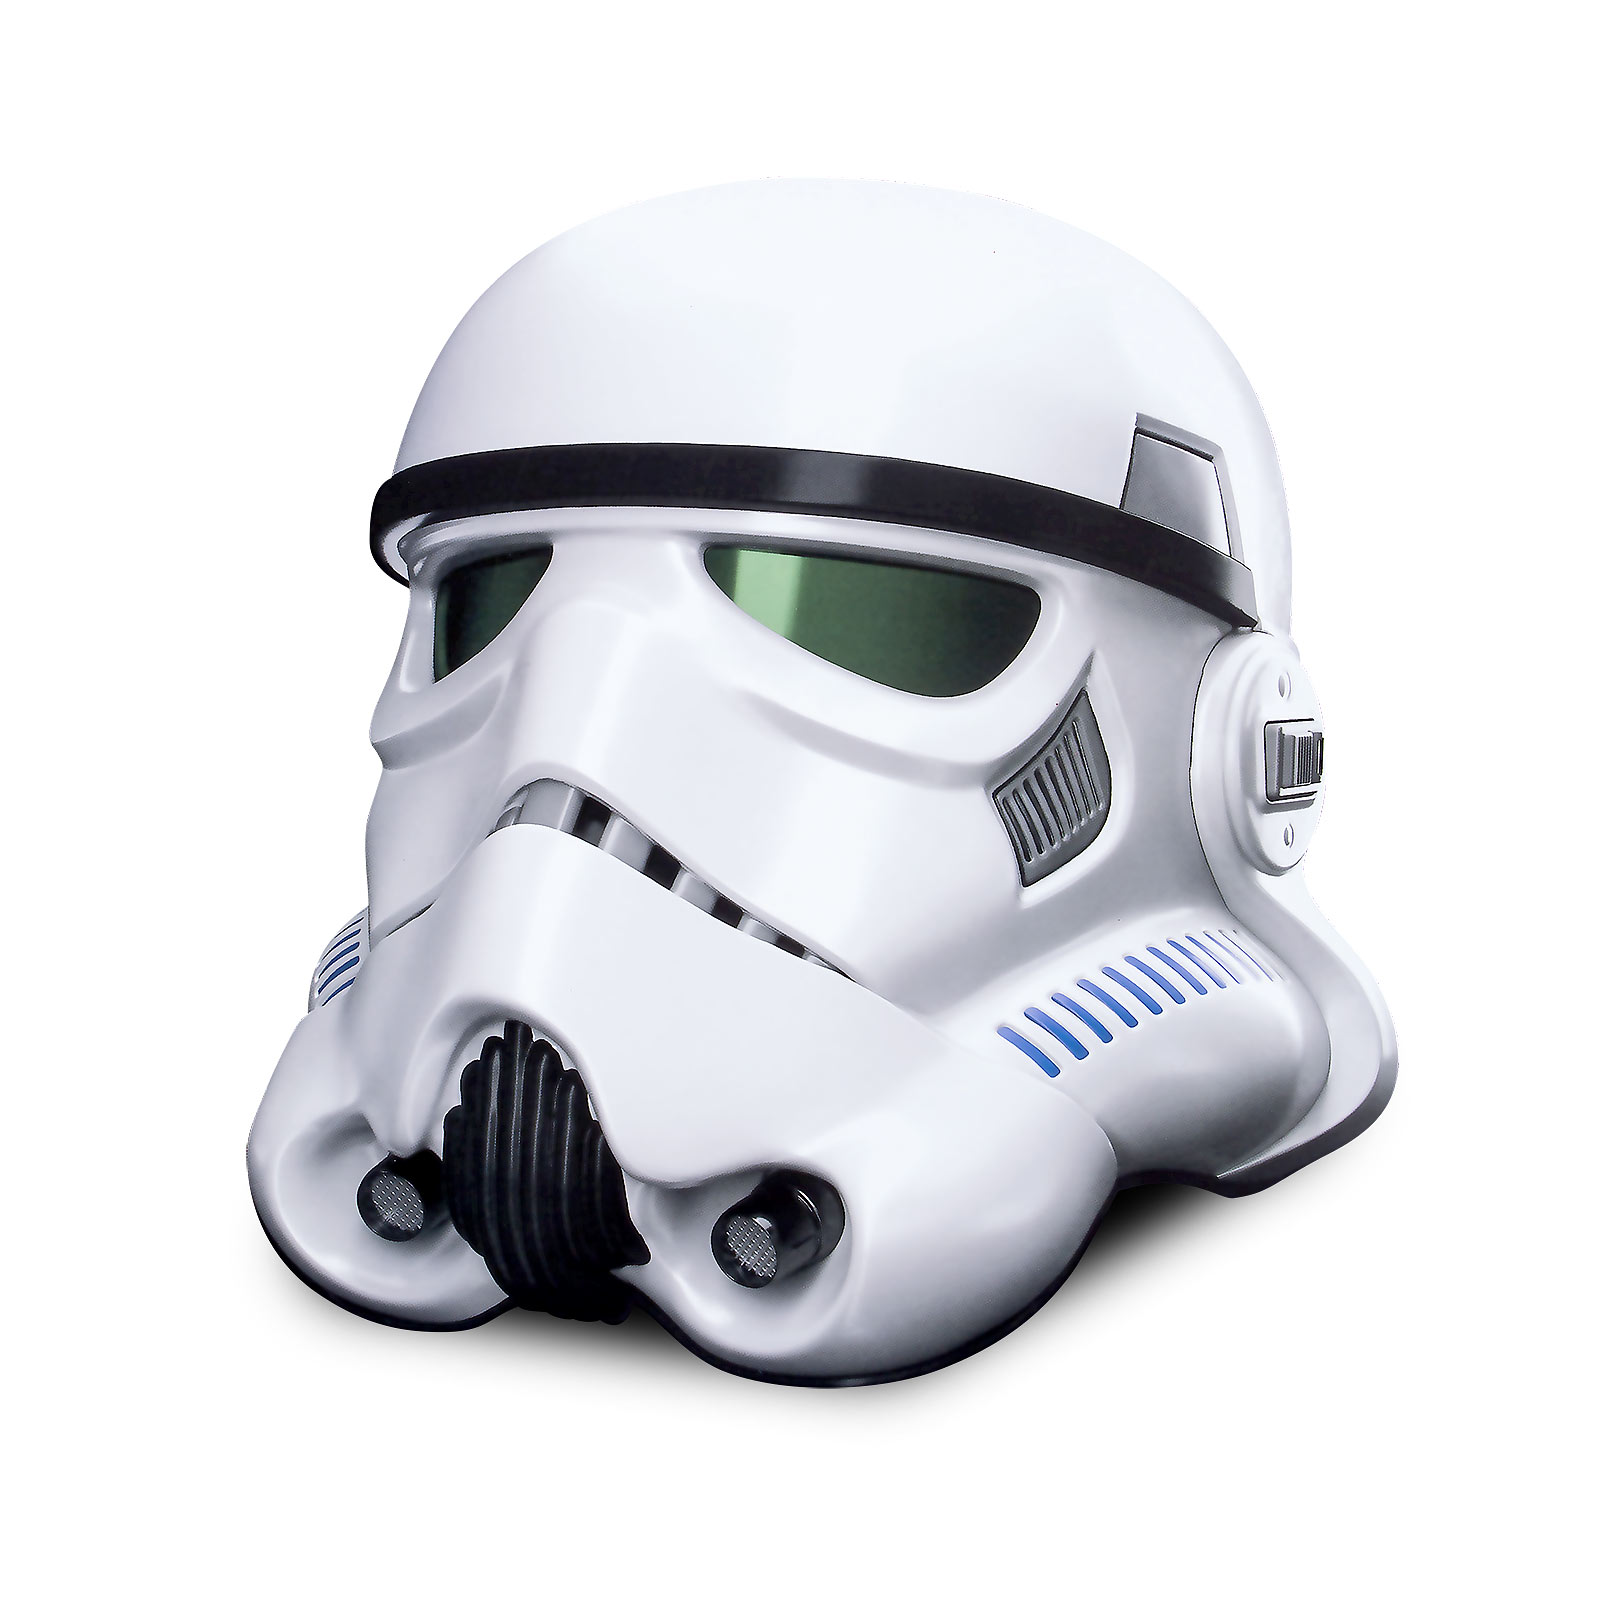 Star Wars - Stormtrooper Helmet with Voice Changer